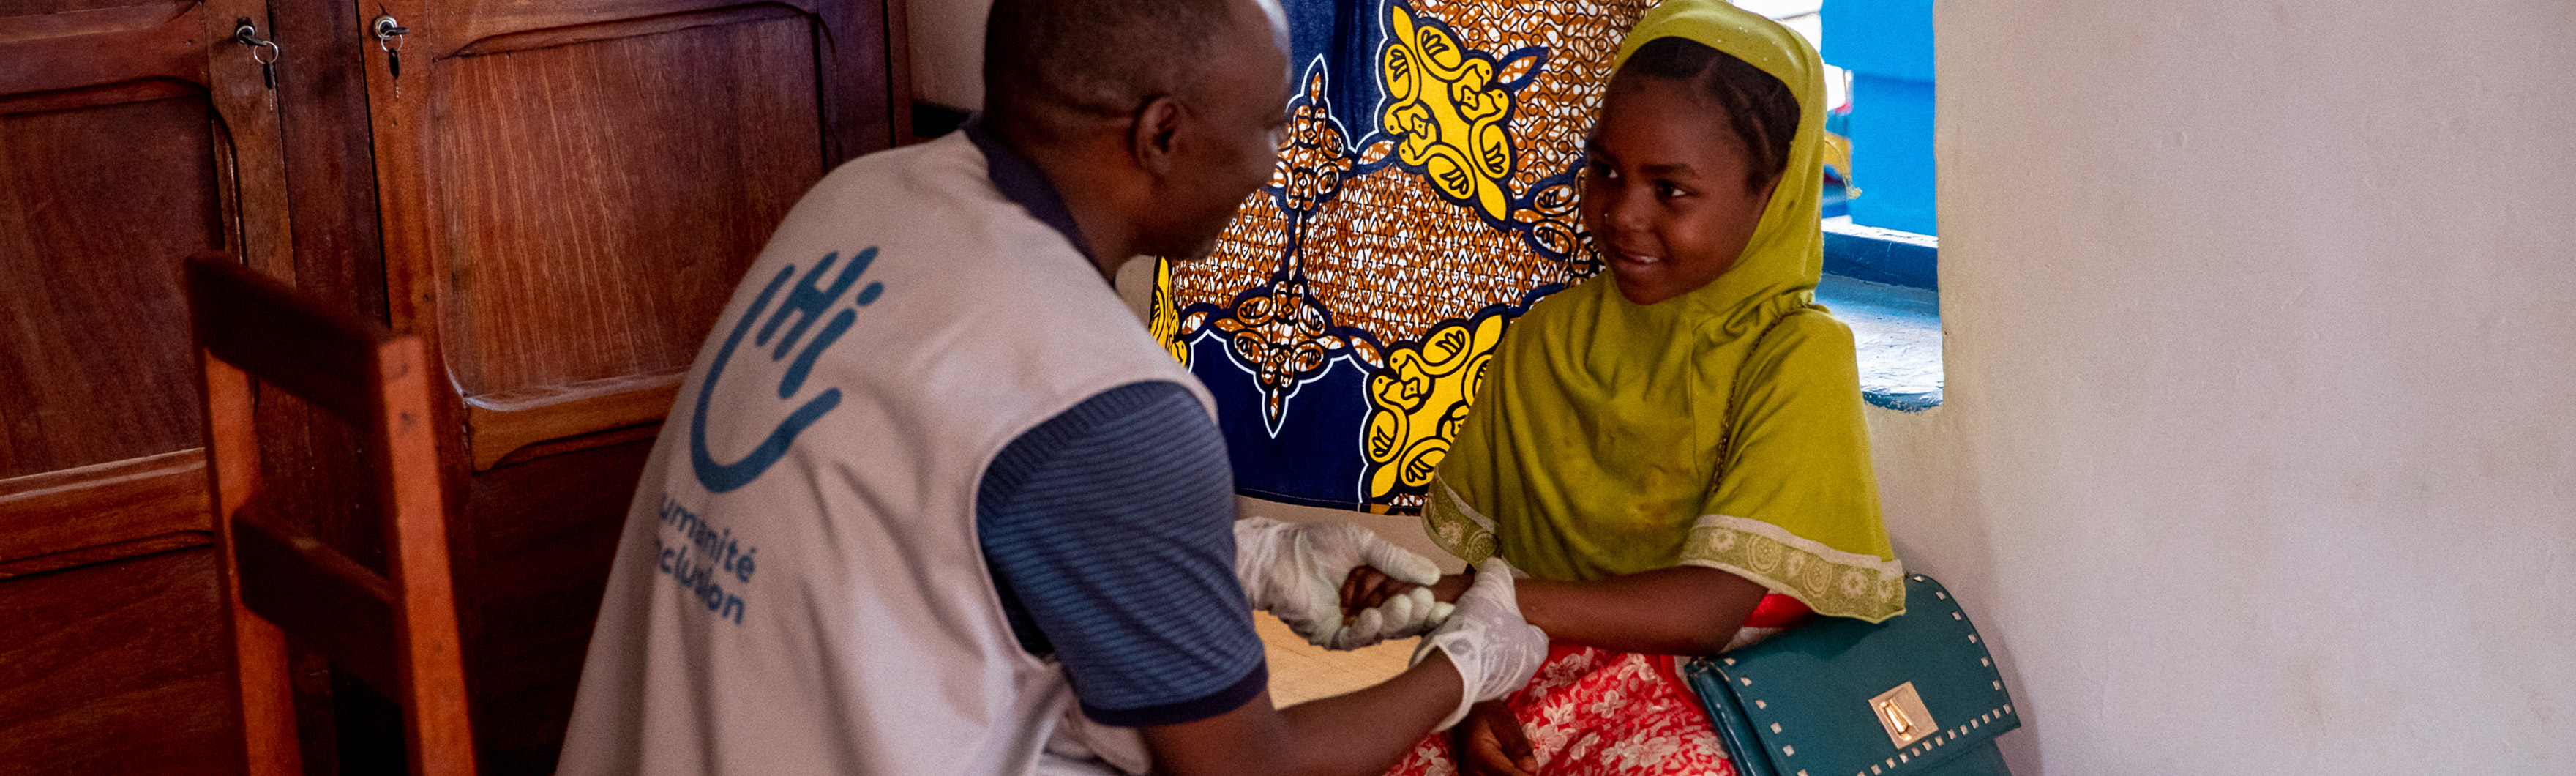 République centrafricaine, Bambari, Waïda Sadia, reçoit des soins en réadaptation par un kinésithérapeute de HI. 